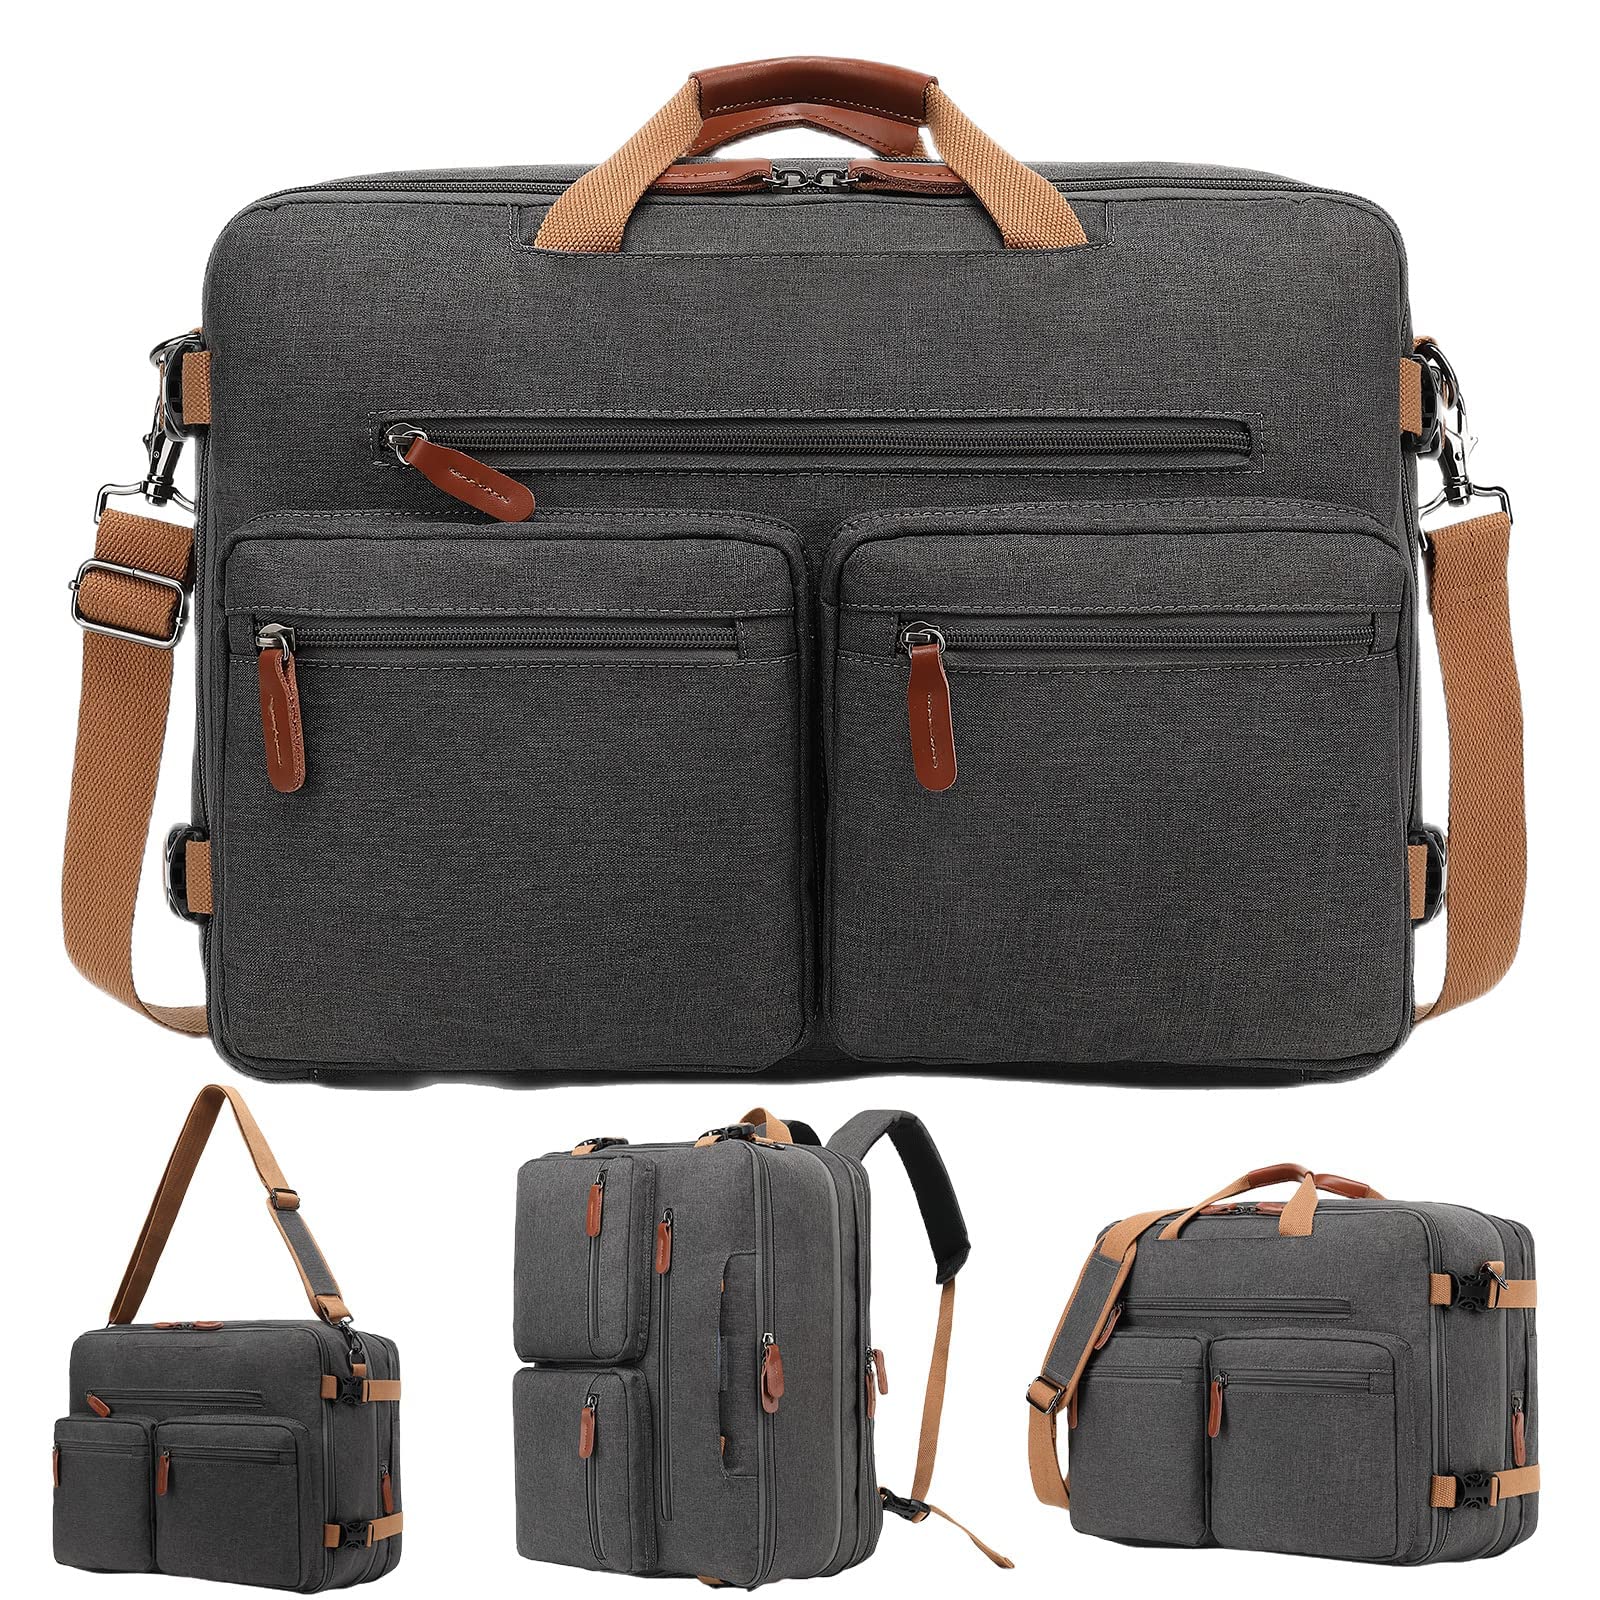 送料無料MOLNIA Expandable Laptop Backpack 3 in 1 Laptop Bag 17.3 inch Computer Backpack Multi-functional Travel Bag 2